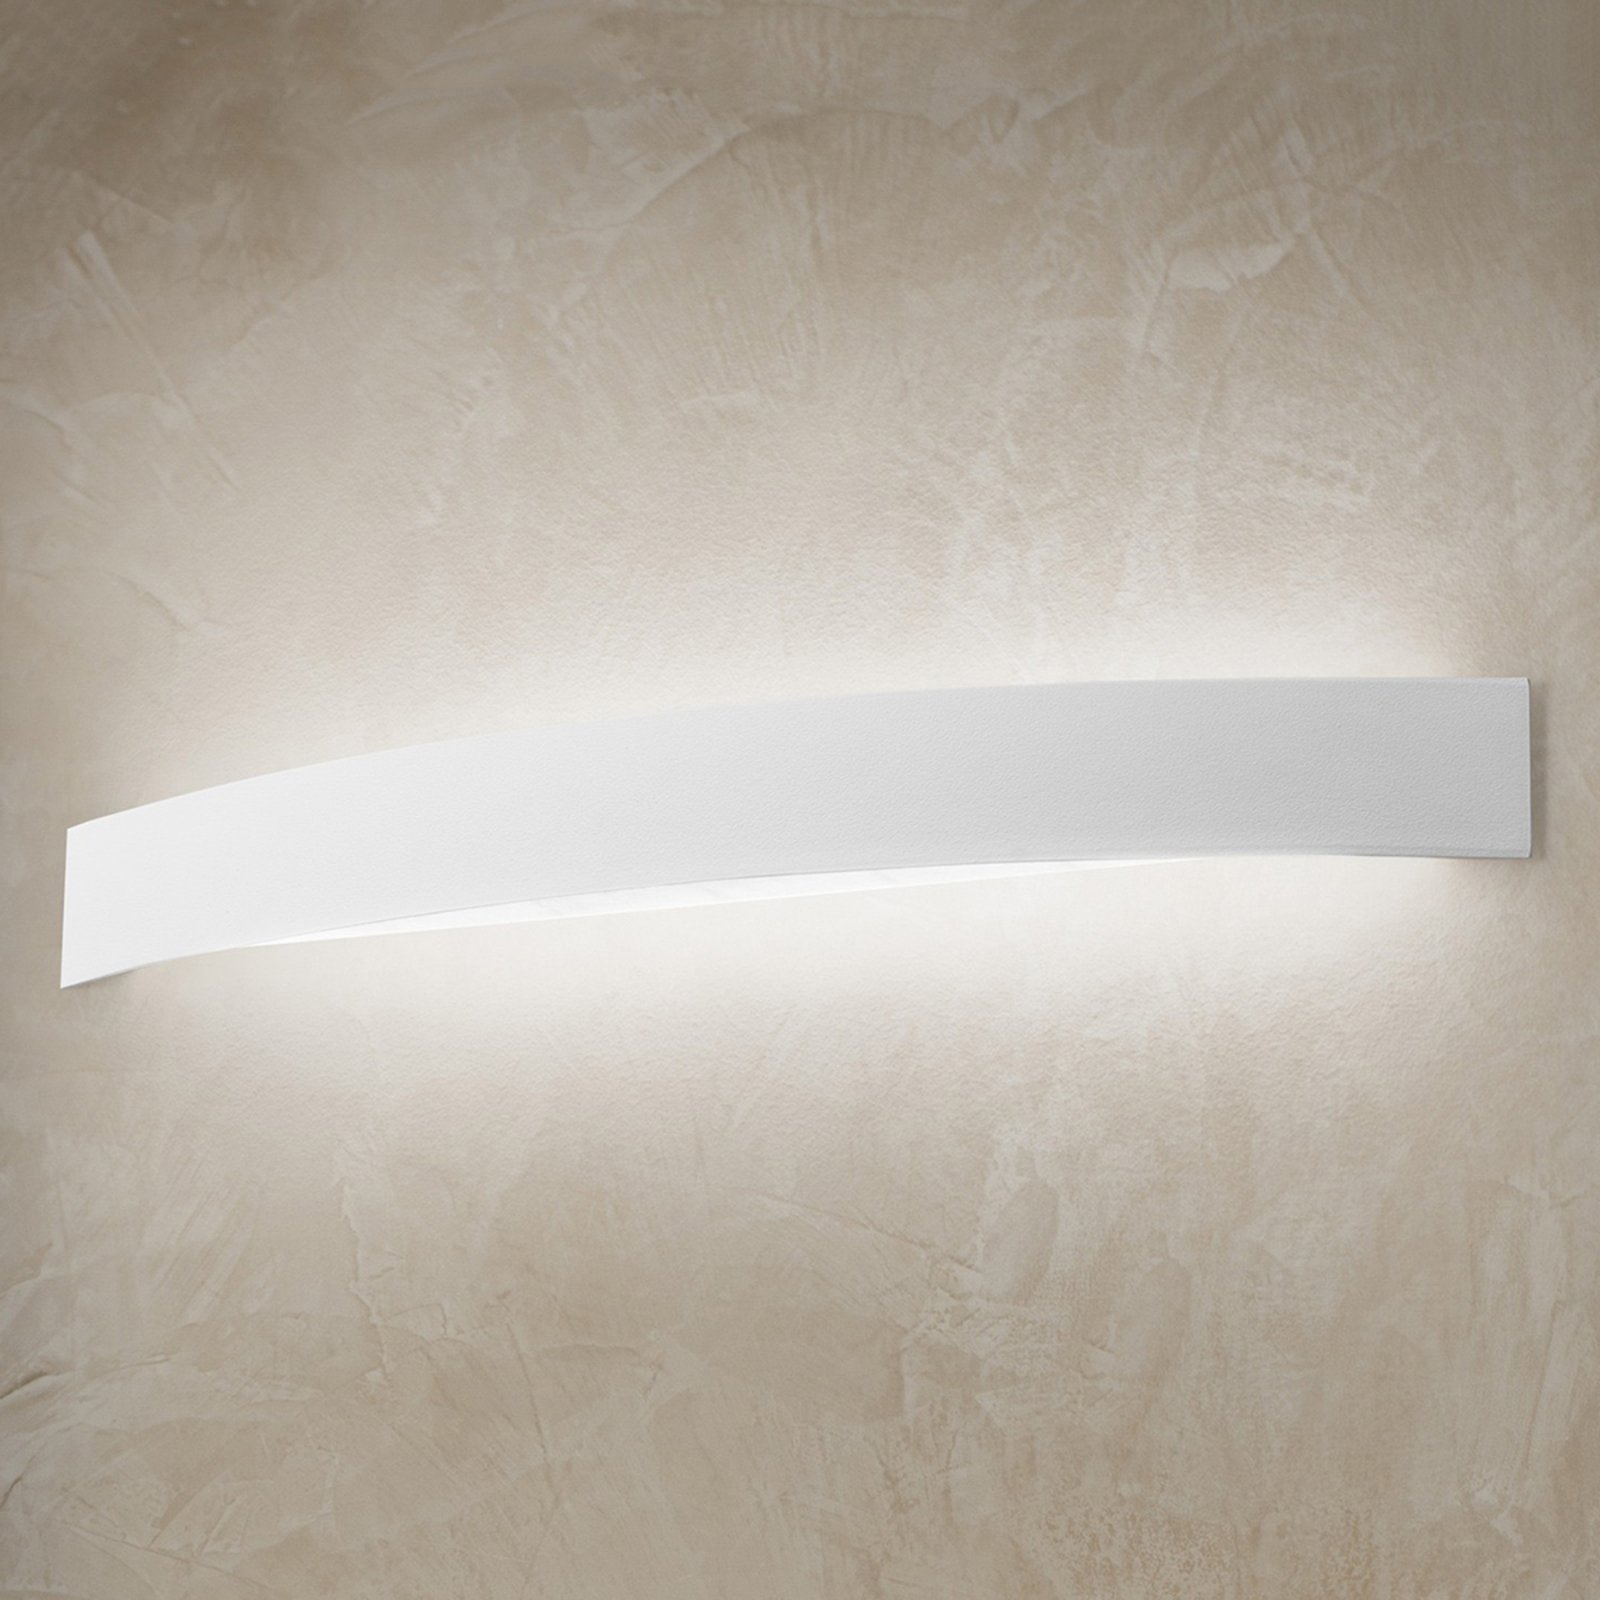 Zakrivljena LED zidna svjetiljka Curve u bijeloj boji